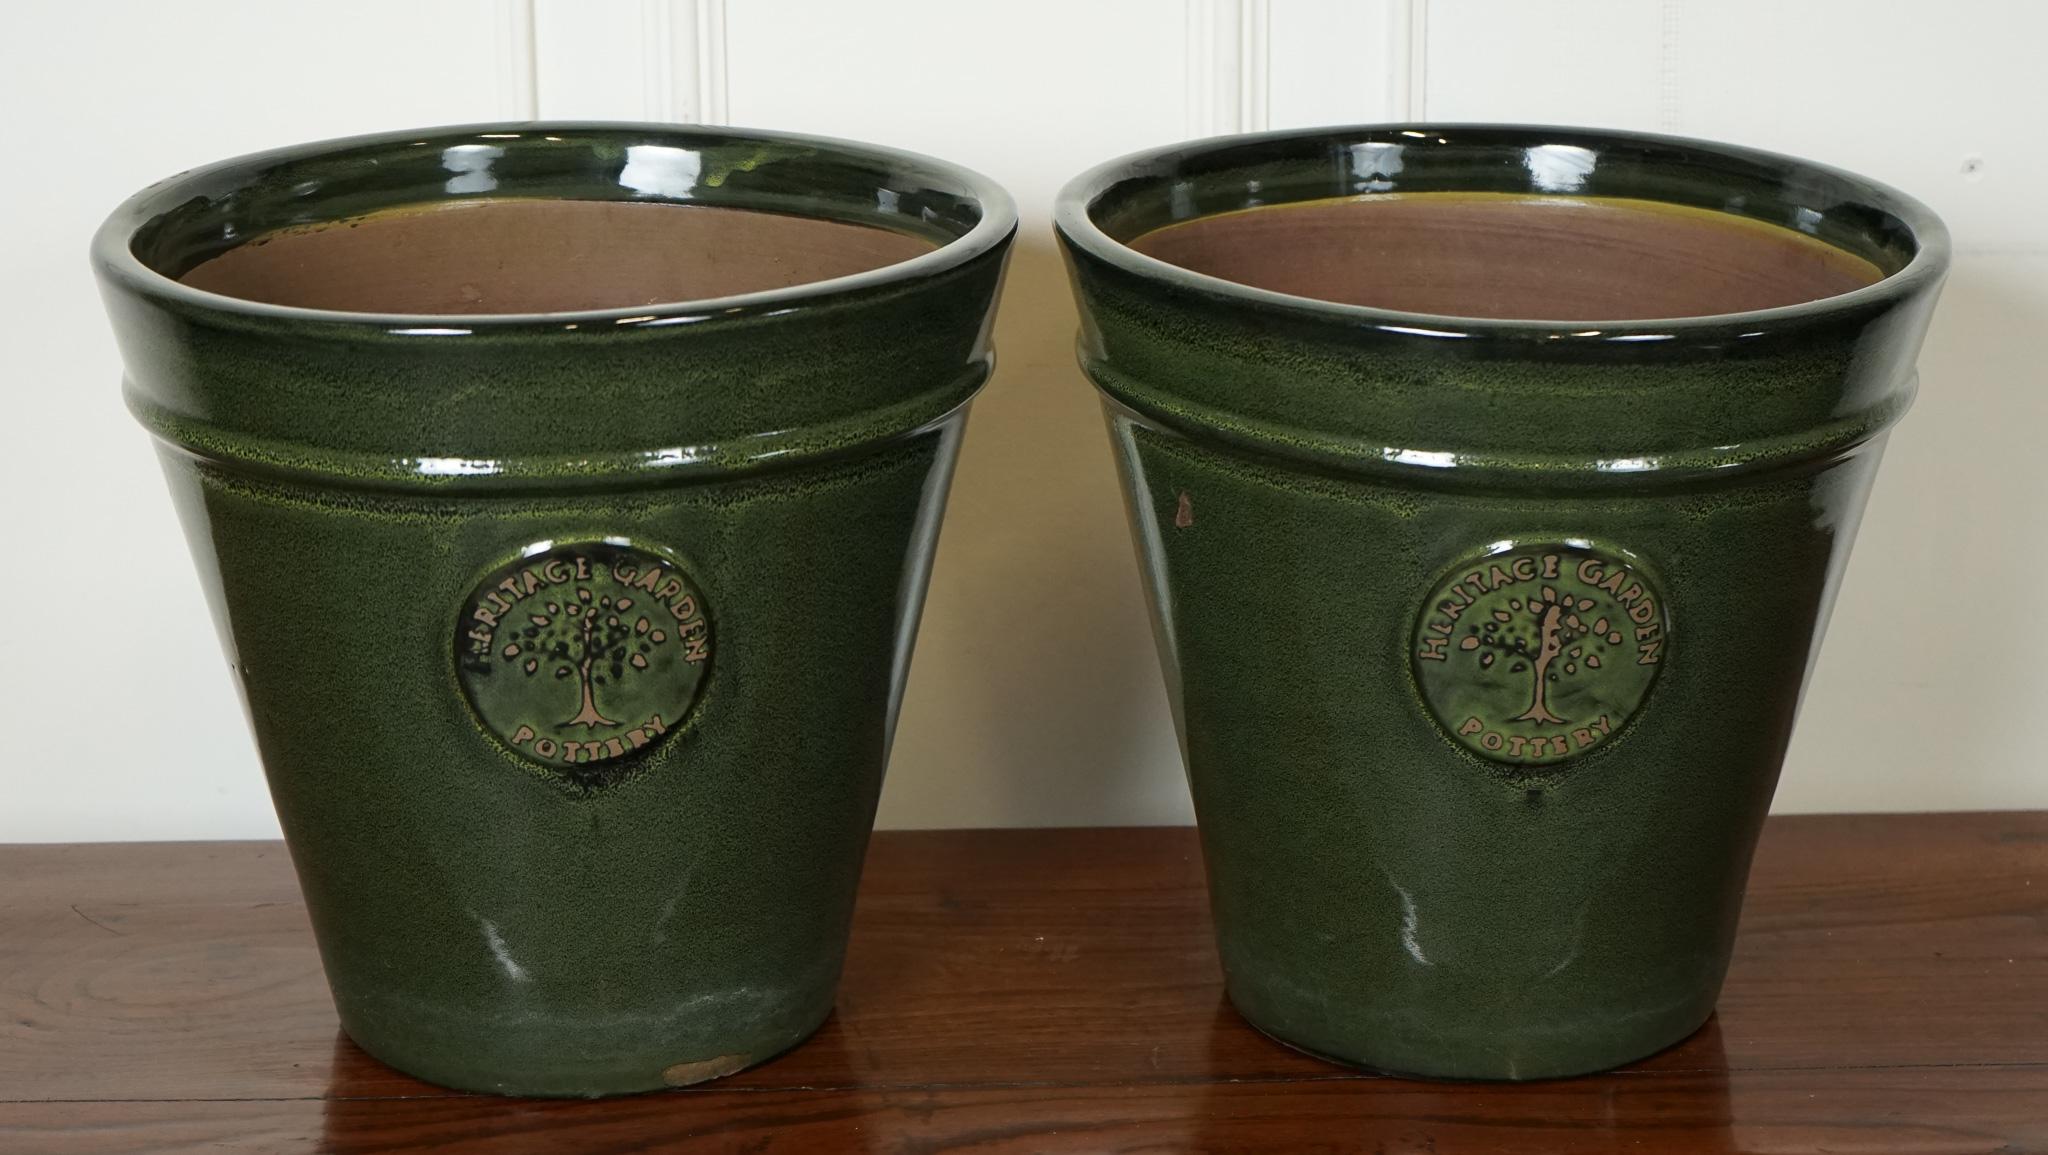 
Nous sommes ravis d'offrir à la vente une paire de pots de fleurs verts de style édouardien par Heritage Garden.

Fabriqués à partir de matériaux de haute qualité, ces pots à plantes présentent une riche couleur verte qui ajoute une touche de luxe